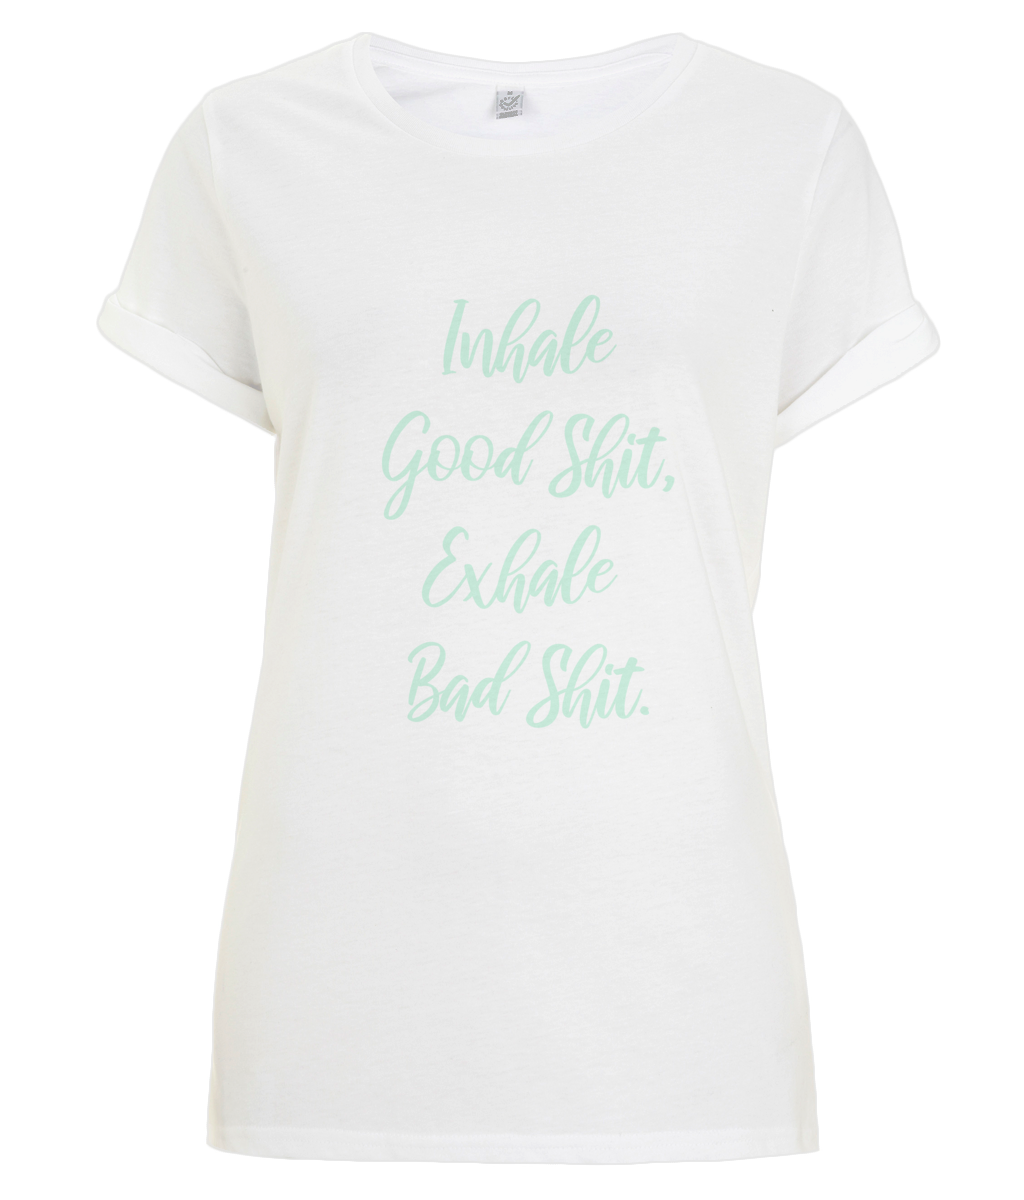 Inhale Good Shit -  organic T-shirt - Mint.